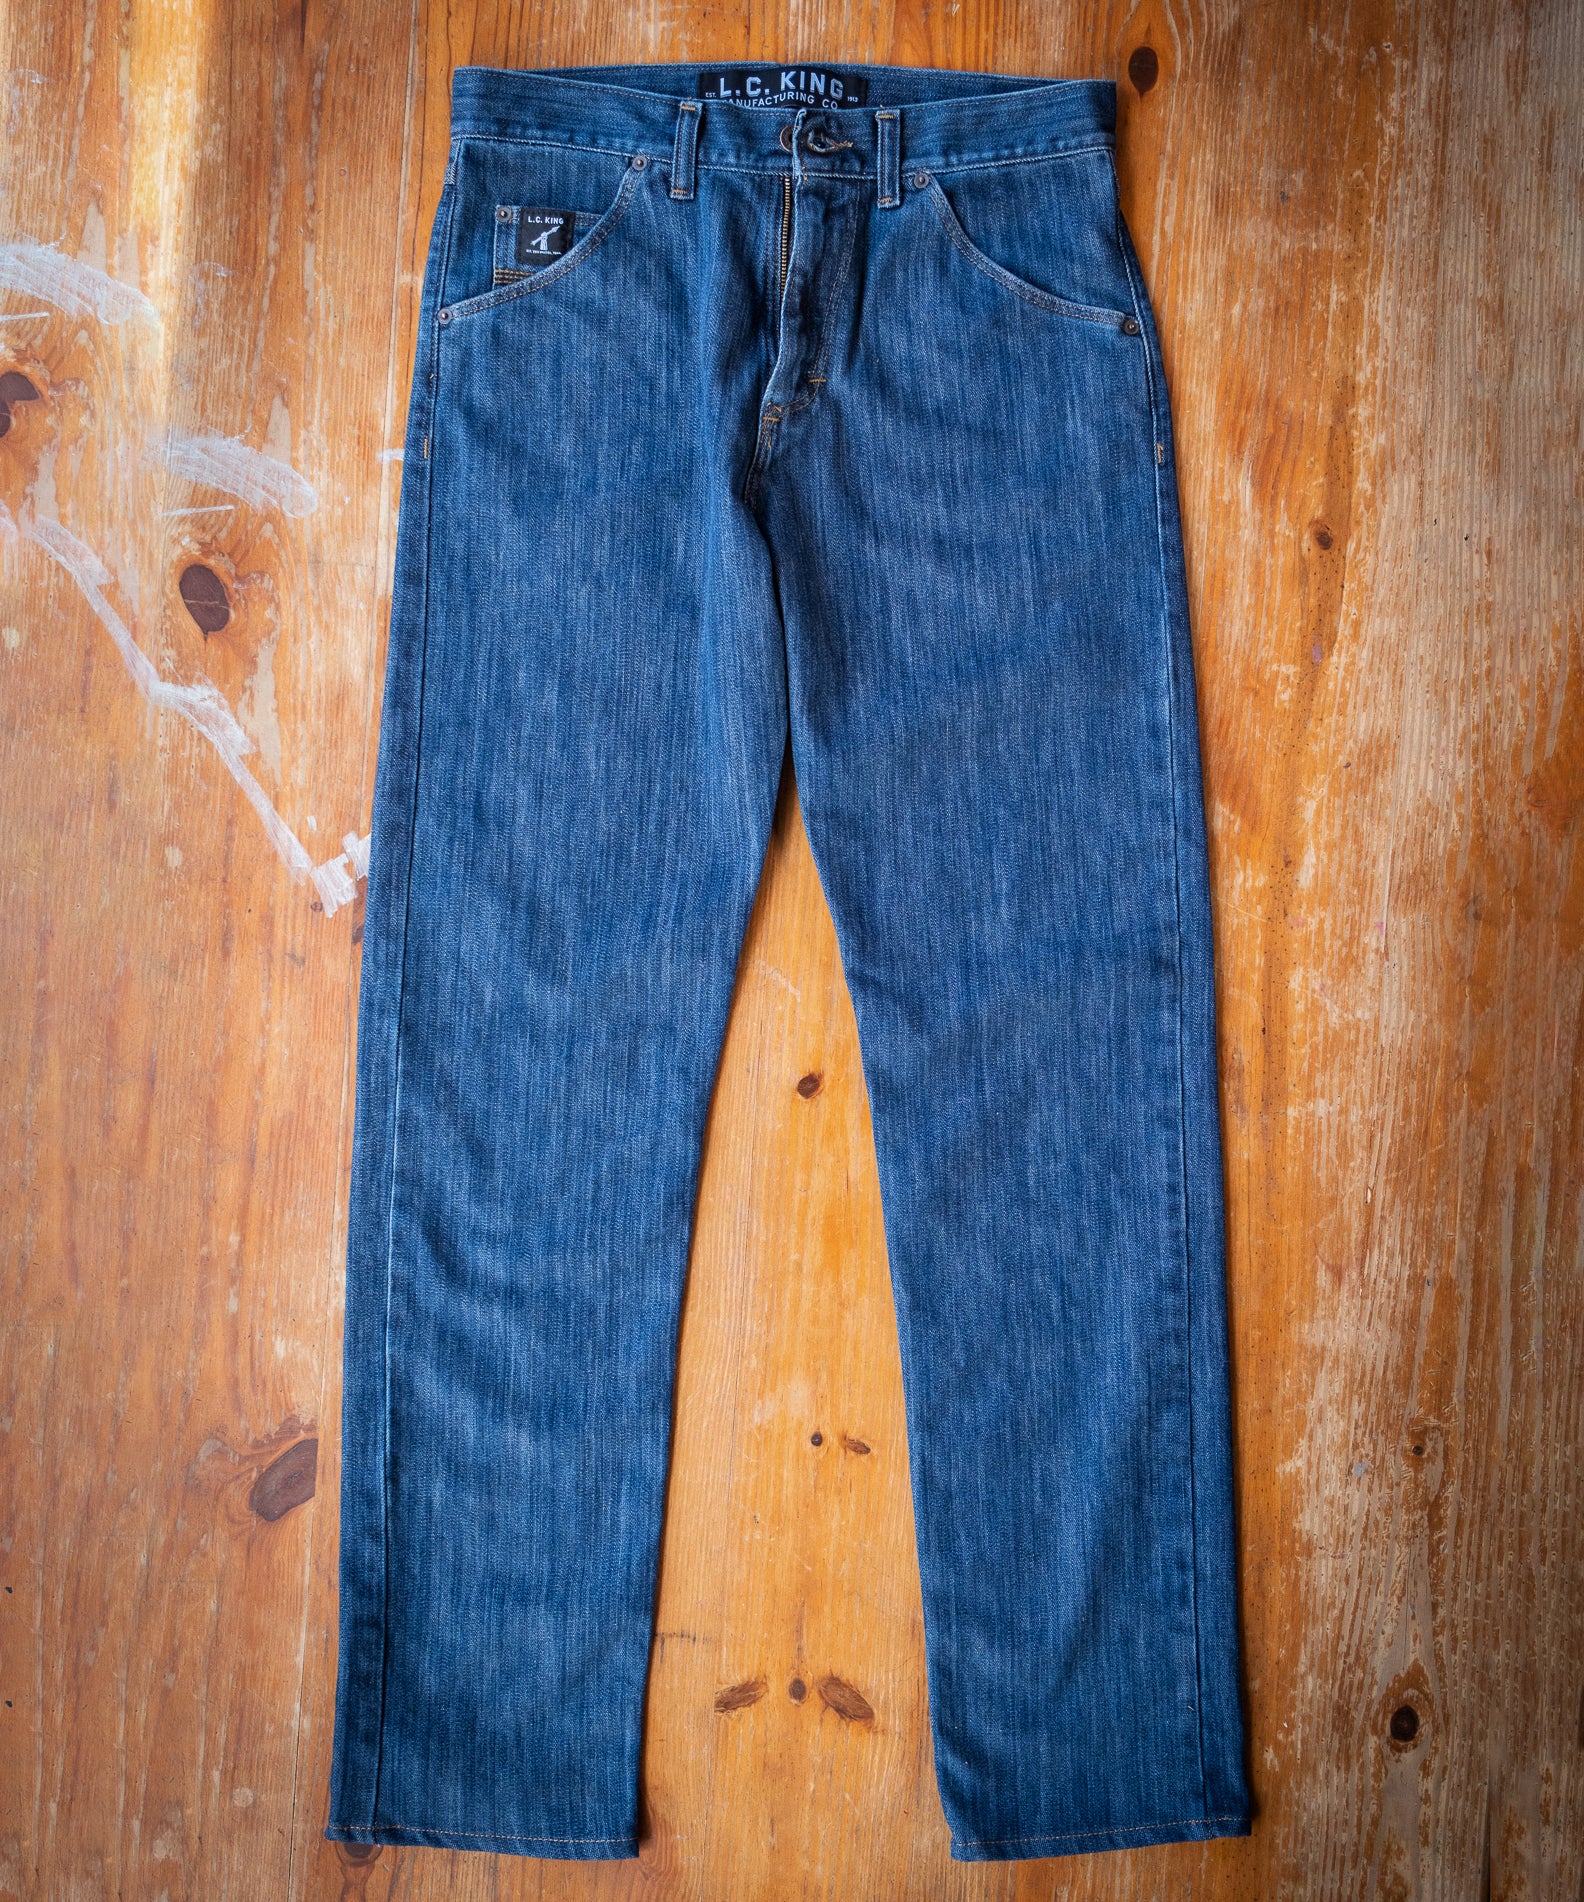 New Washed Denim 5 Pocket Jean